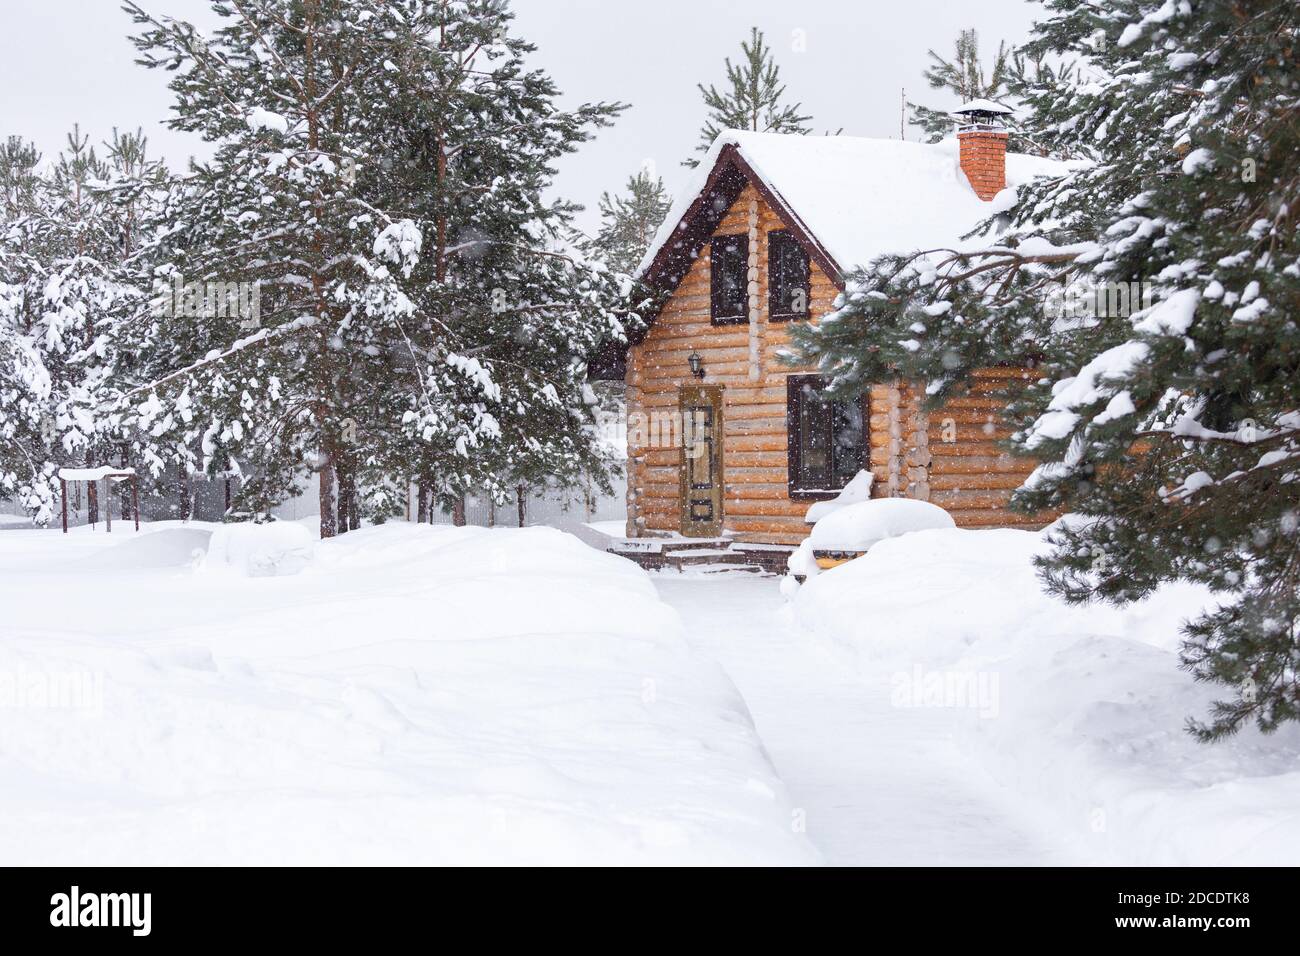 Casa di tronchi rustica, pini innevati, grandi rondini, nevicate. Paesaggio rurale bello inverno. Scena non urbana. Capodanno, Natale. Spazio di copia Foto Stock